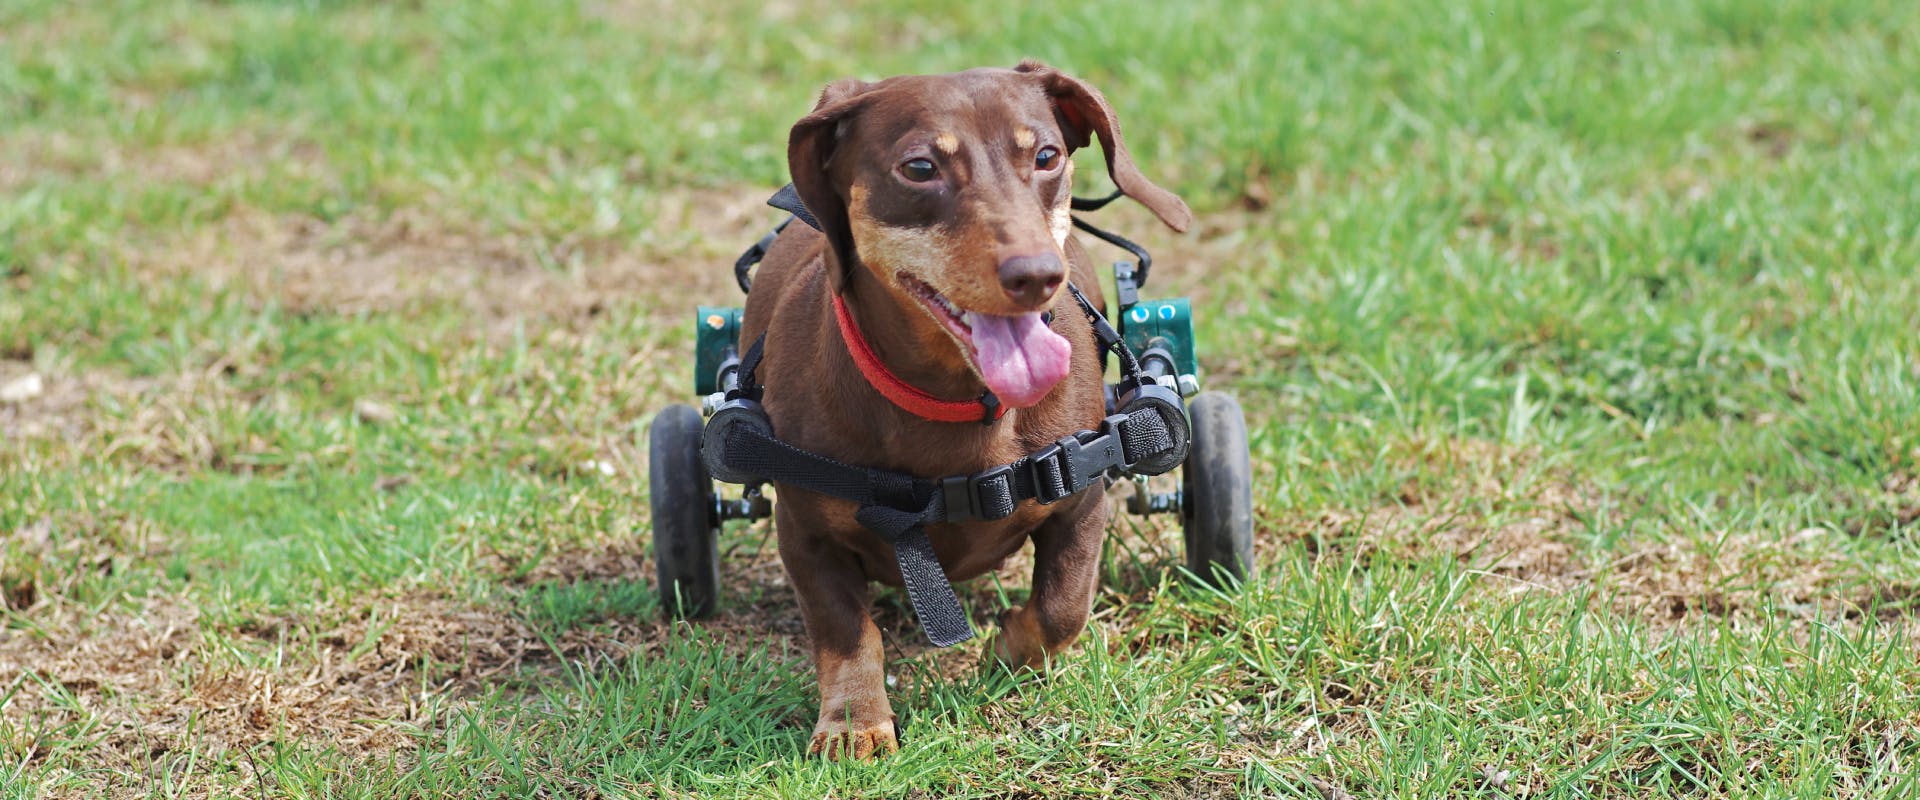 A Dachshund using a doggie wheelchair.